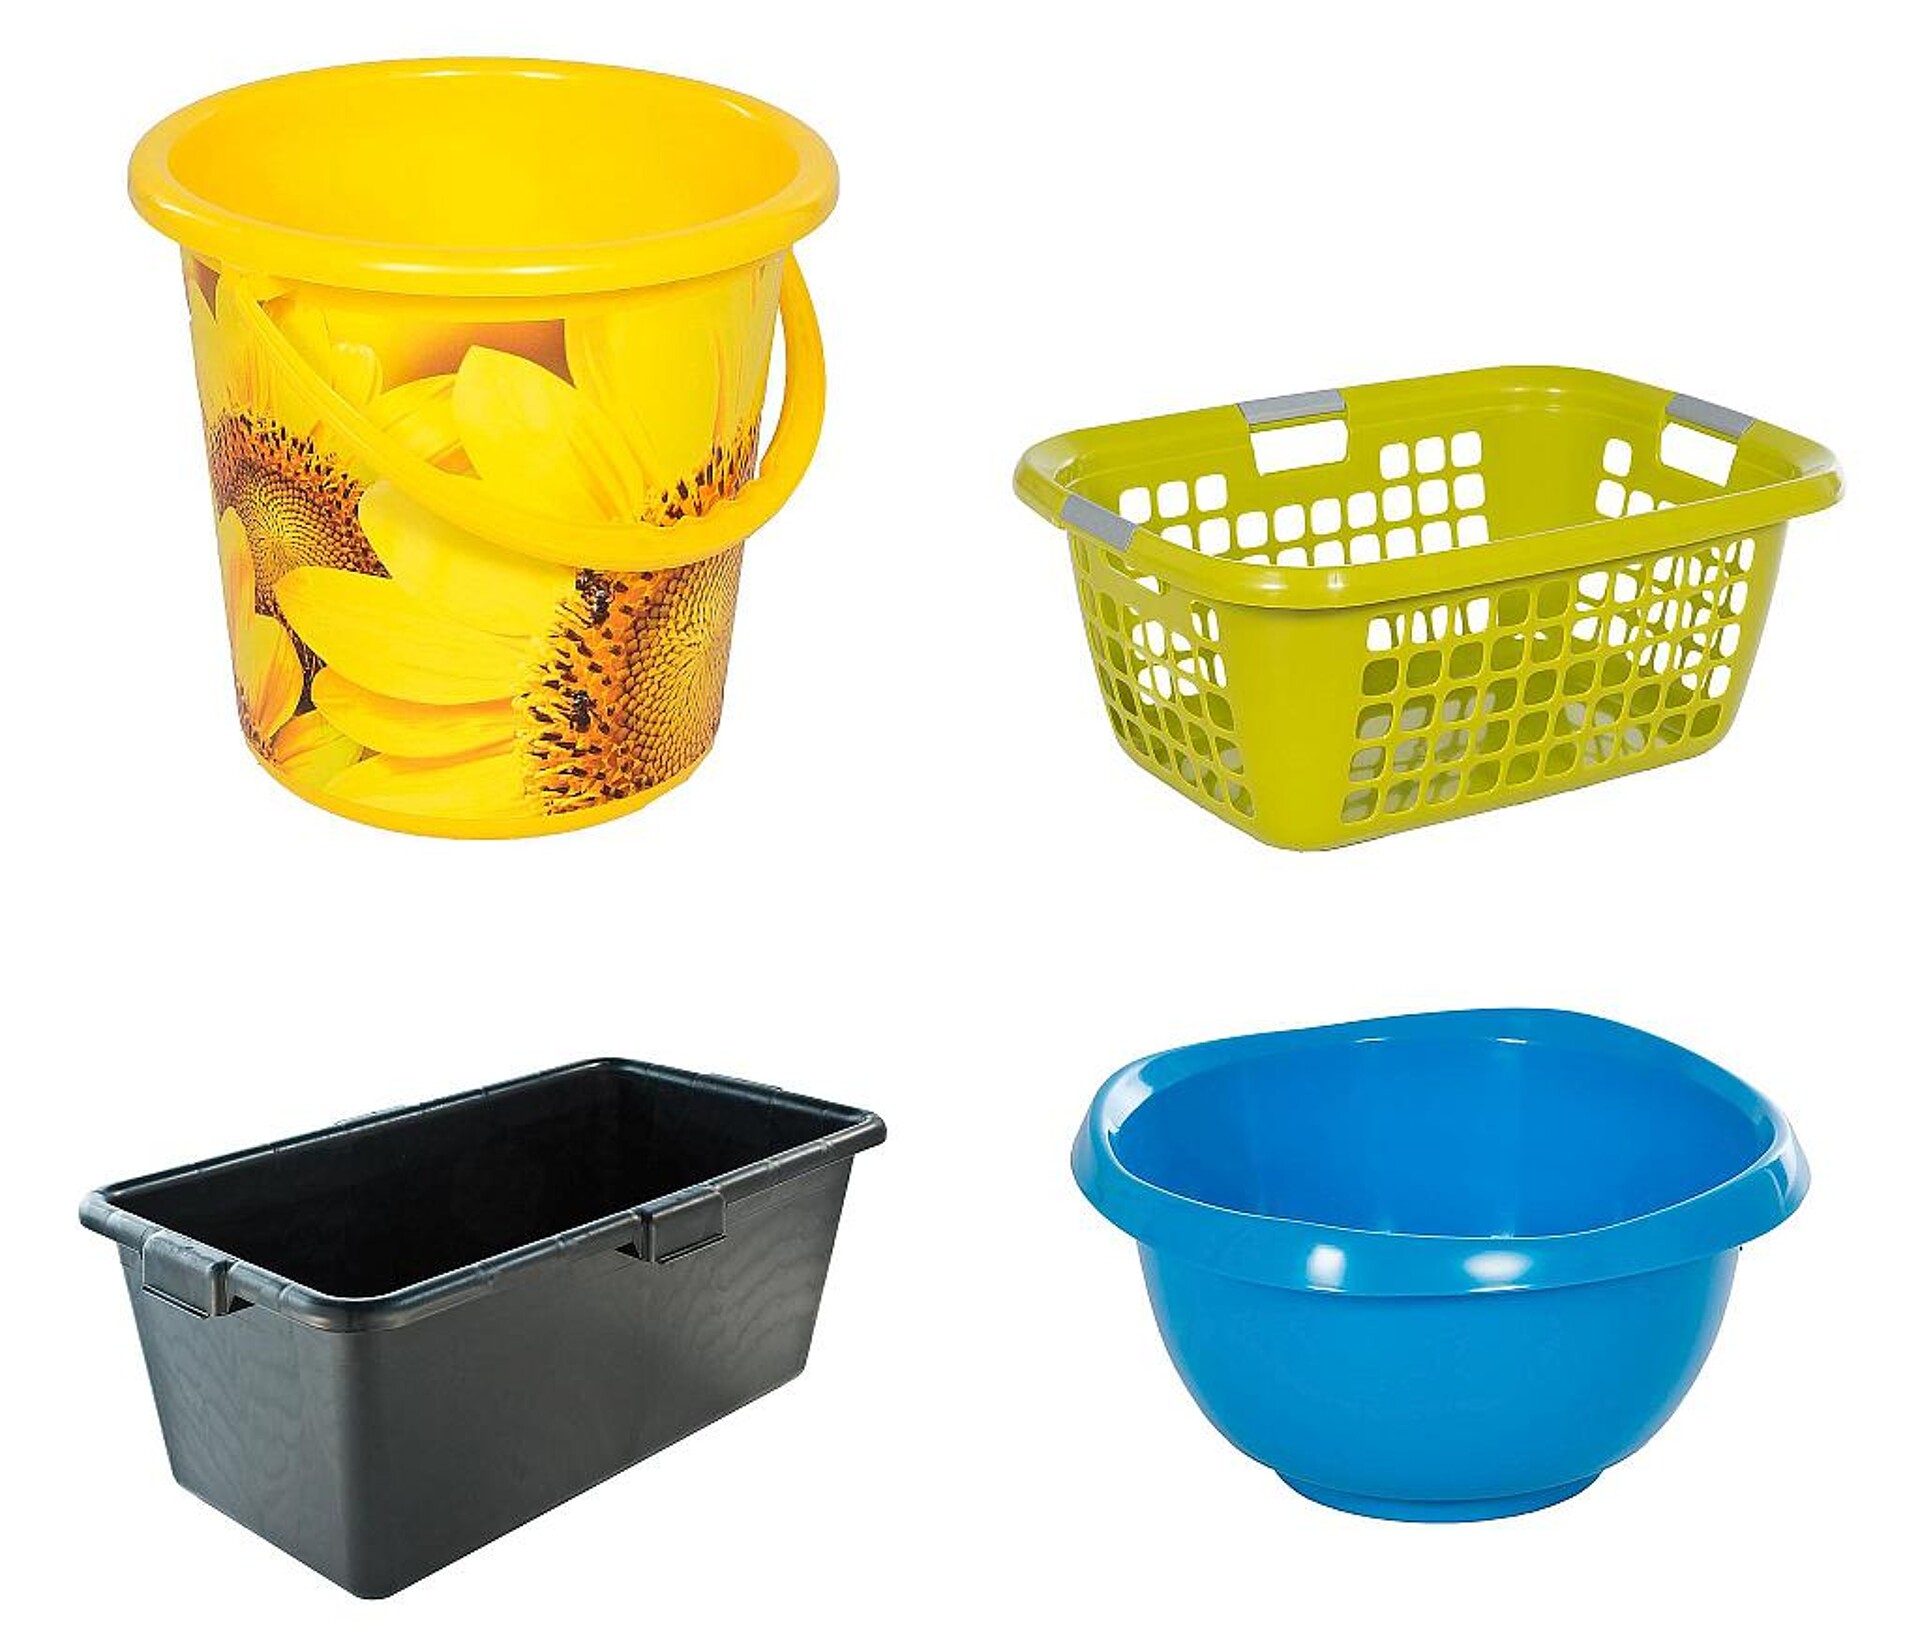 Beispiele aus dem Produktsortiment von Teko-plastic (v.l.o.): Dekoreimer, Mörteltrog, Rundschüssel, Wäschekorb. (Fotos: Teko-plastic)